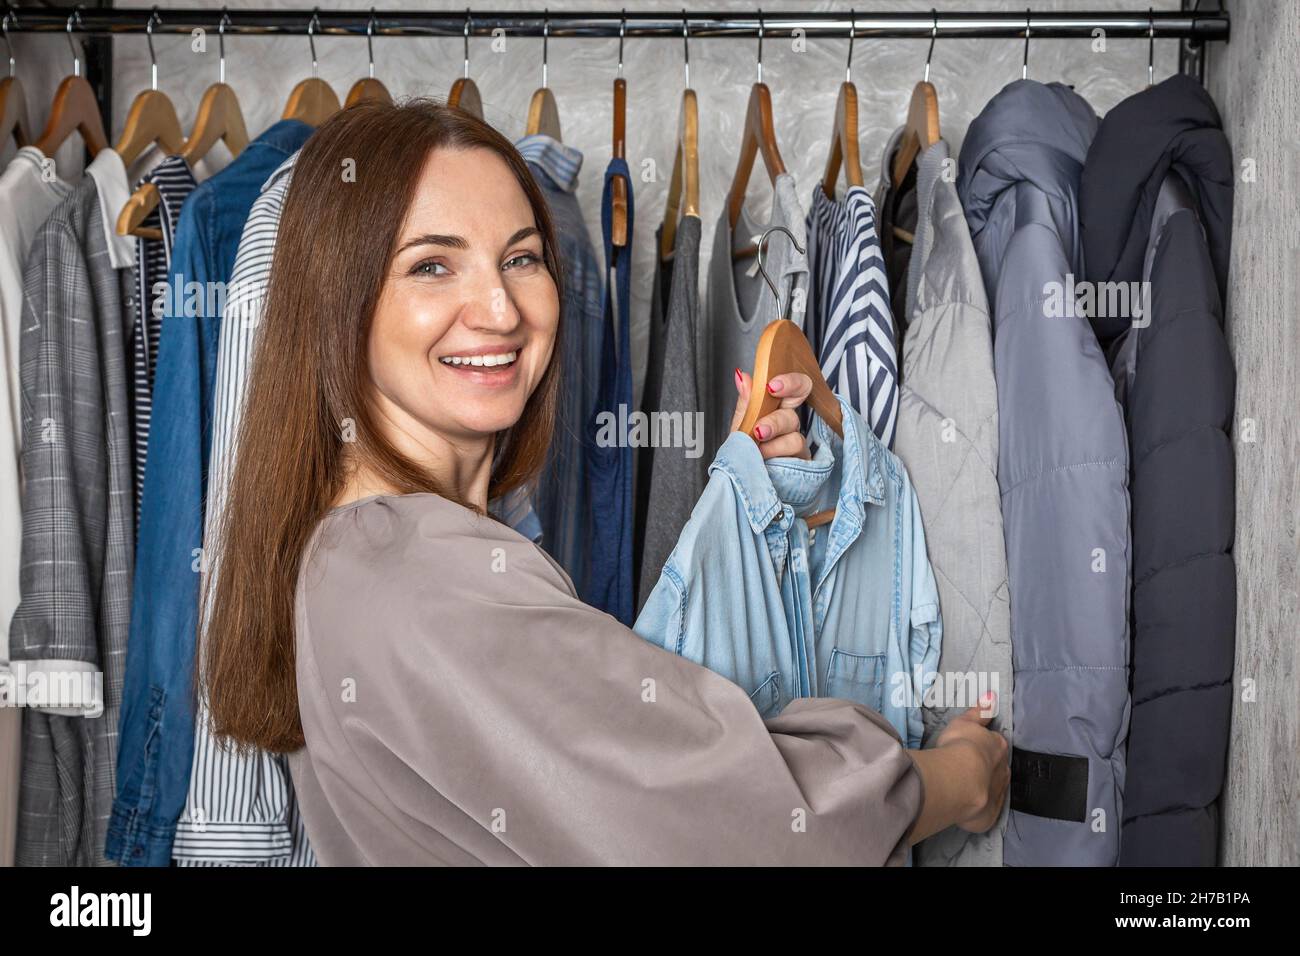 Ritratto felice rossa donna scelta abiti moderno comodo deposito organizzato capsule guardaroba Foto Stock